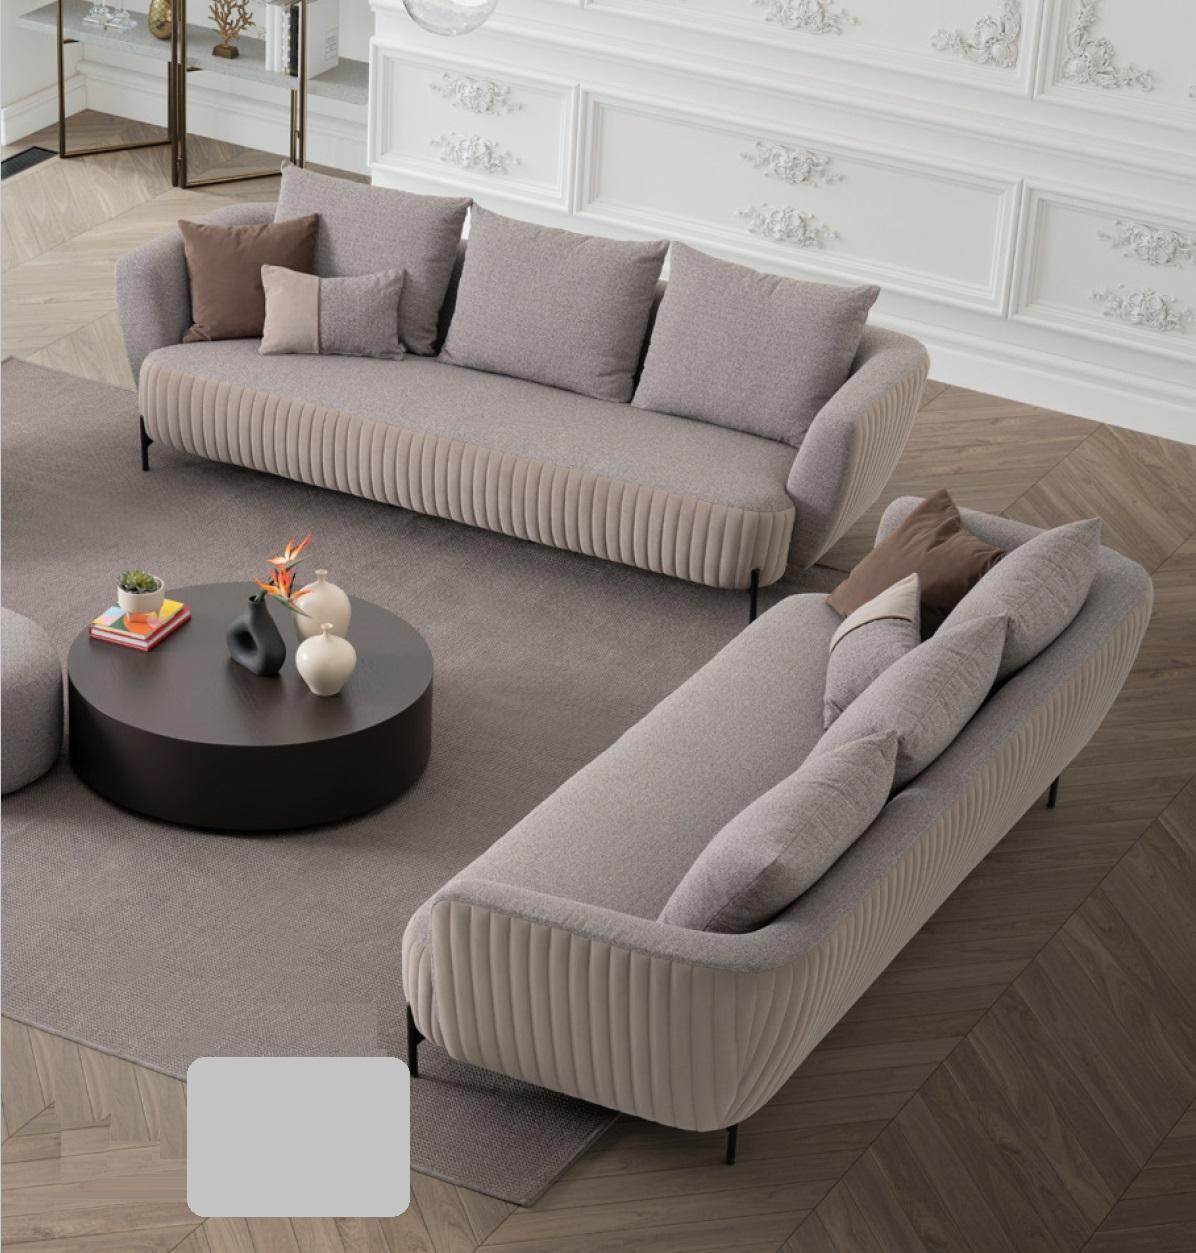 Sofa 4 Sitzer Grau Sofas Stil Luxus Wohnzimmer Modern Design Polster Stoff Neu